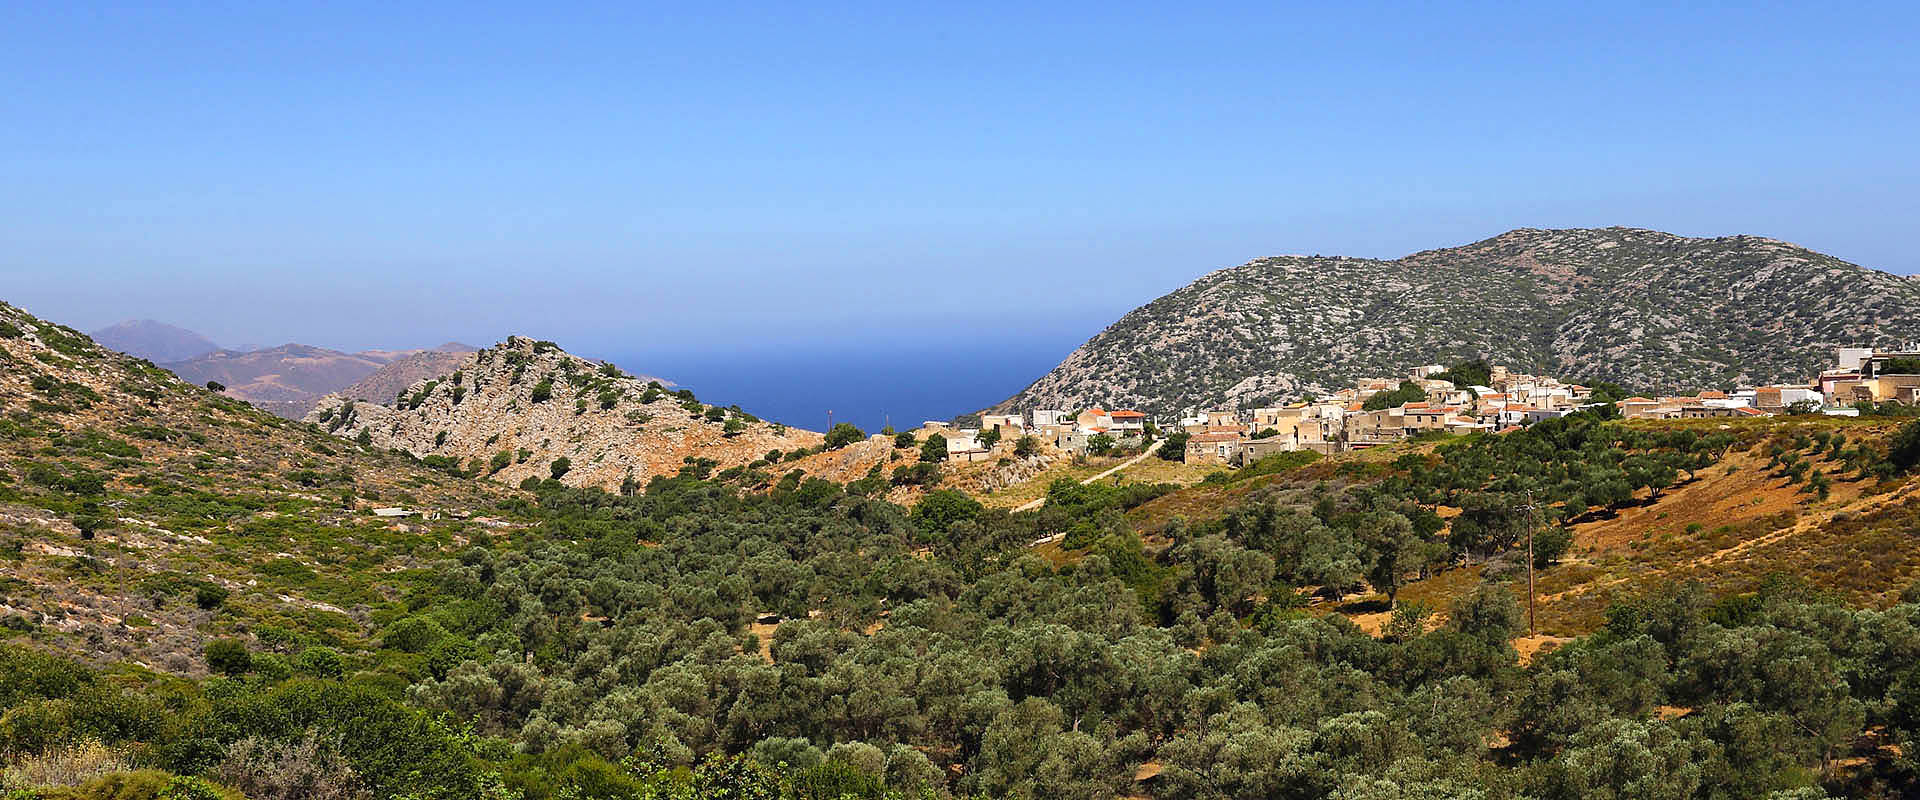 Insel Kreta: Ökotourismus-Hotel Mourtzanakis